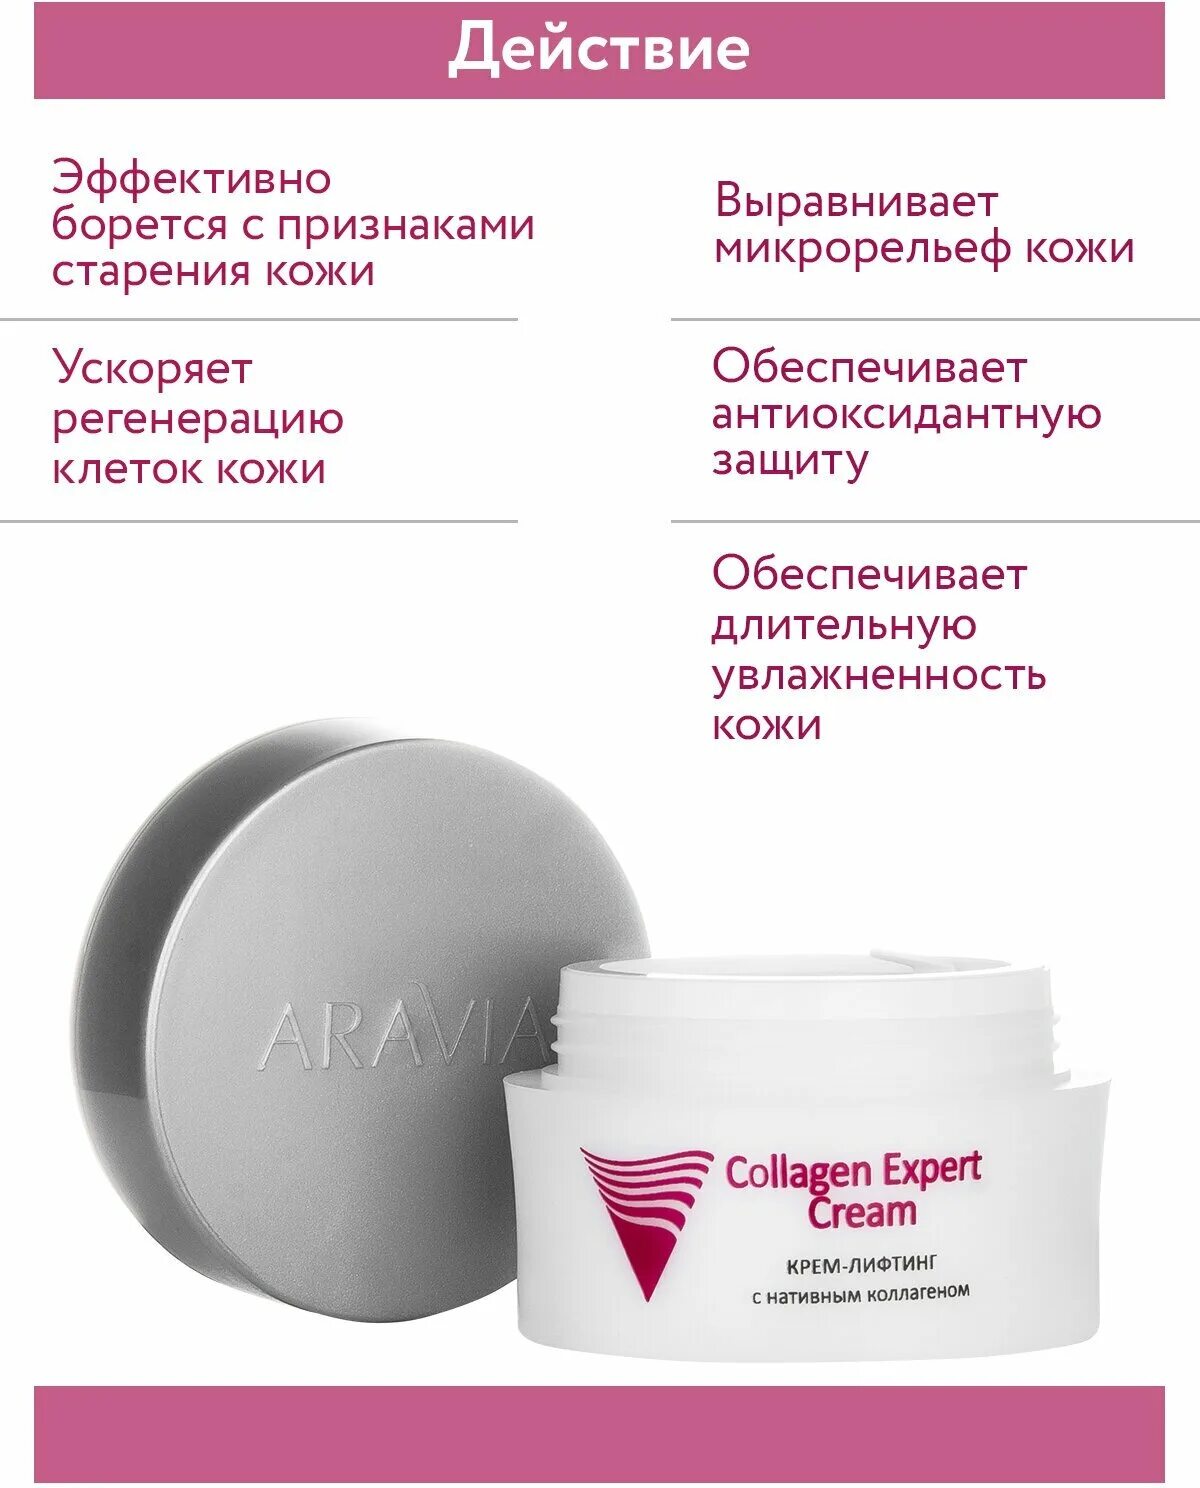 Aravia sunscreen spf 50. Крем Aravia крем для лица. Aravia Collagen Expert Cream. Аравия крем с коллагеном. Аравия крем лифтинговый с аминокислотами.